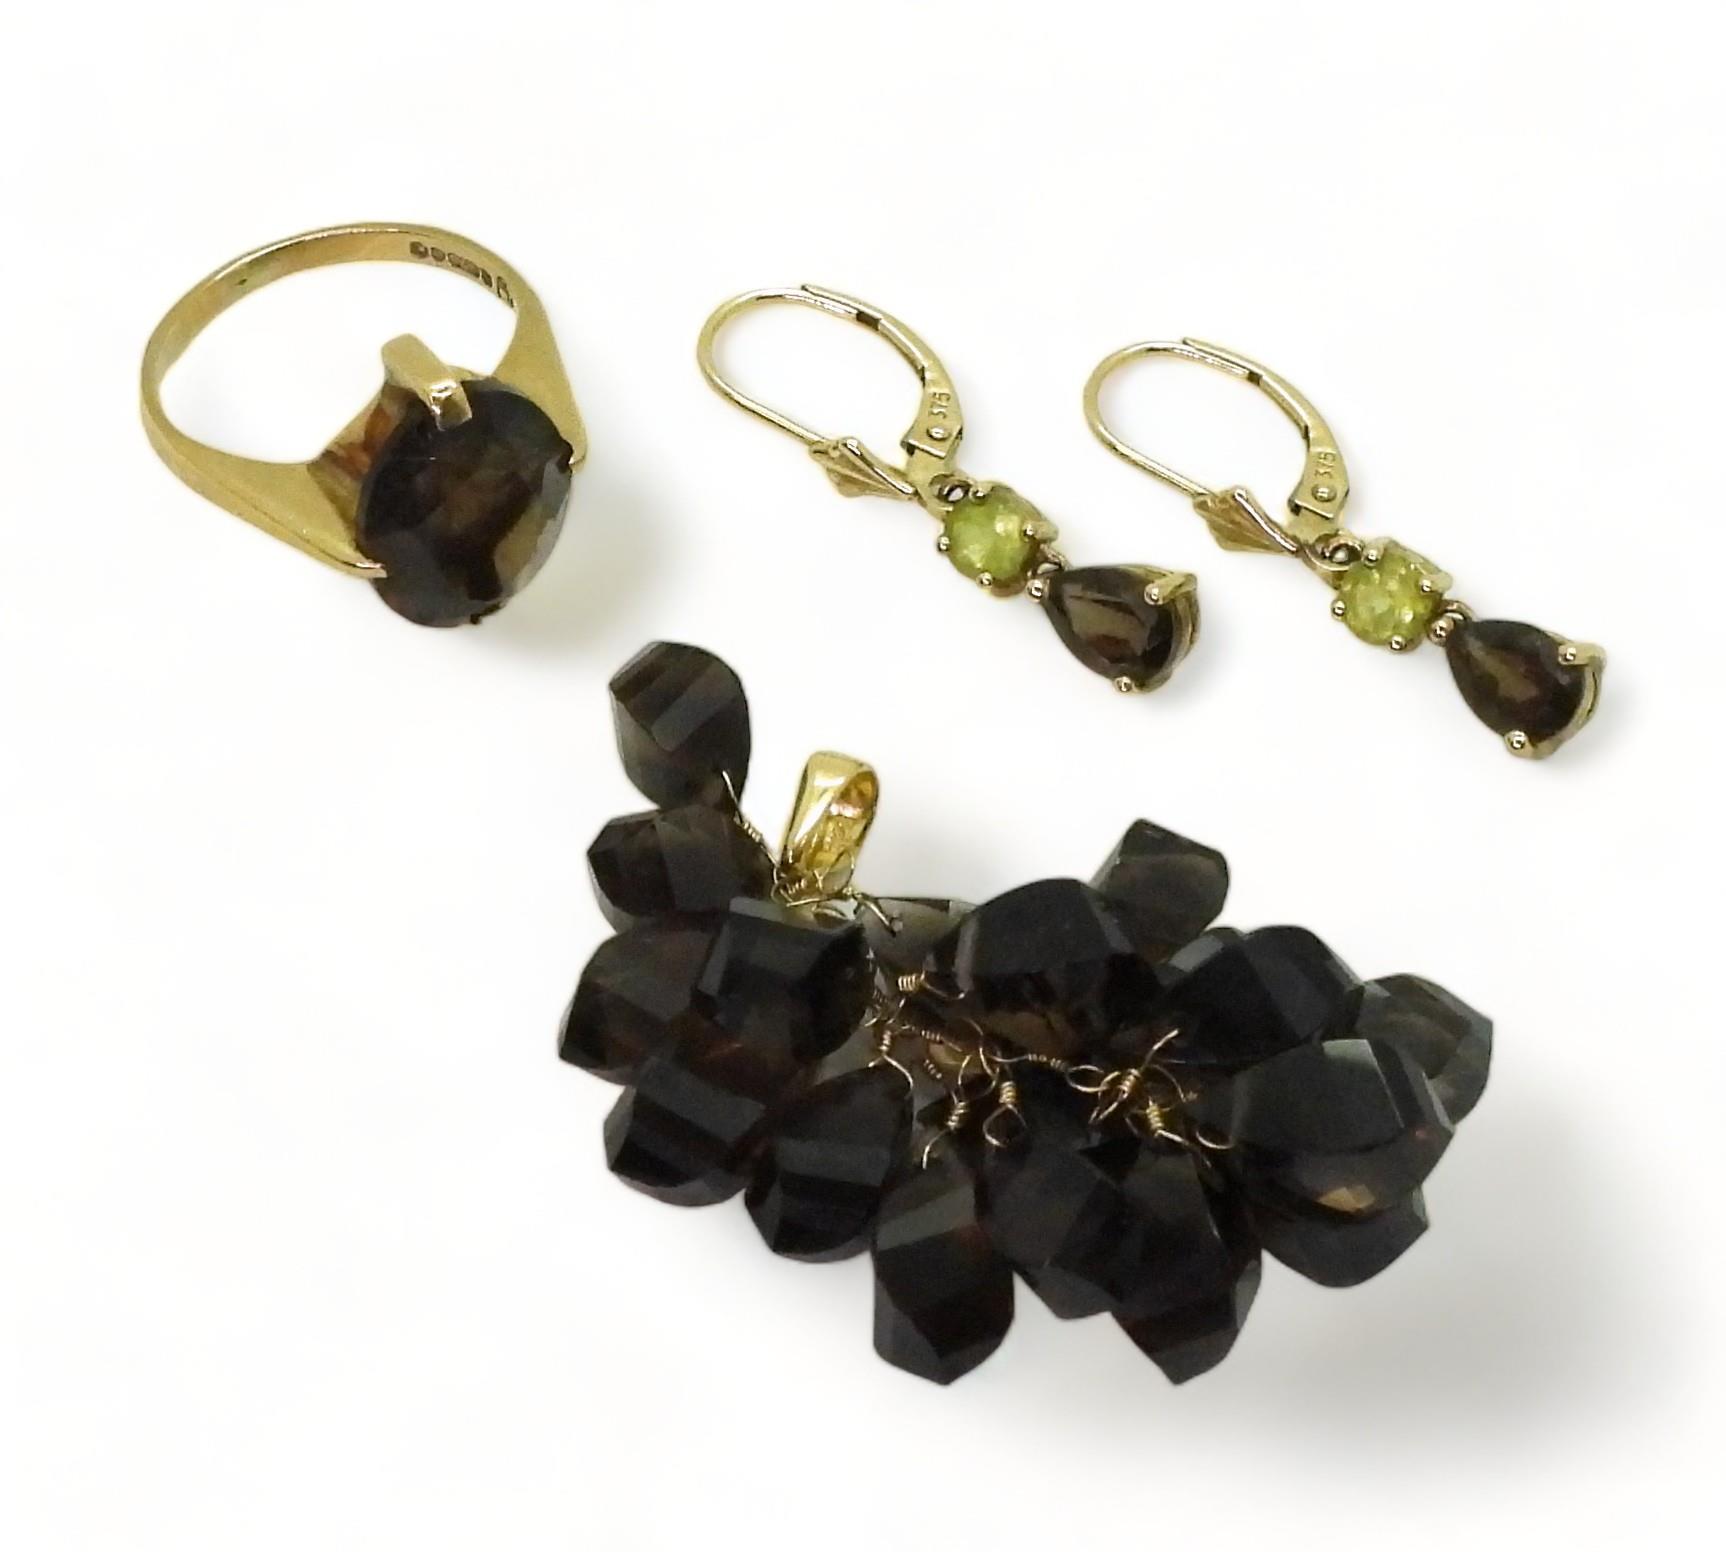 A 14k smoky quartz bunch of grapes pendant, weight 7.6gms, together with a pair o f smoky quart